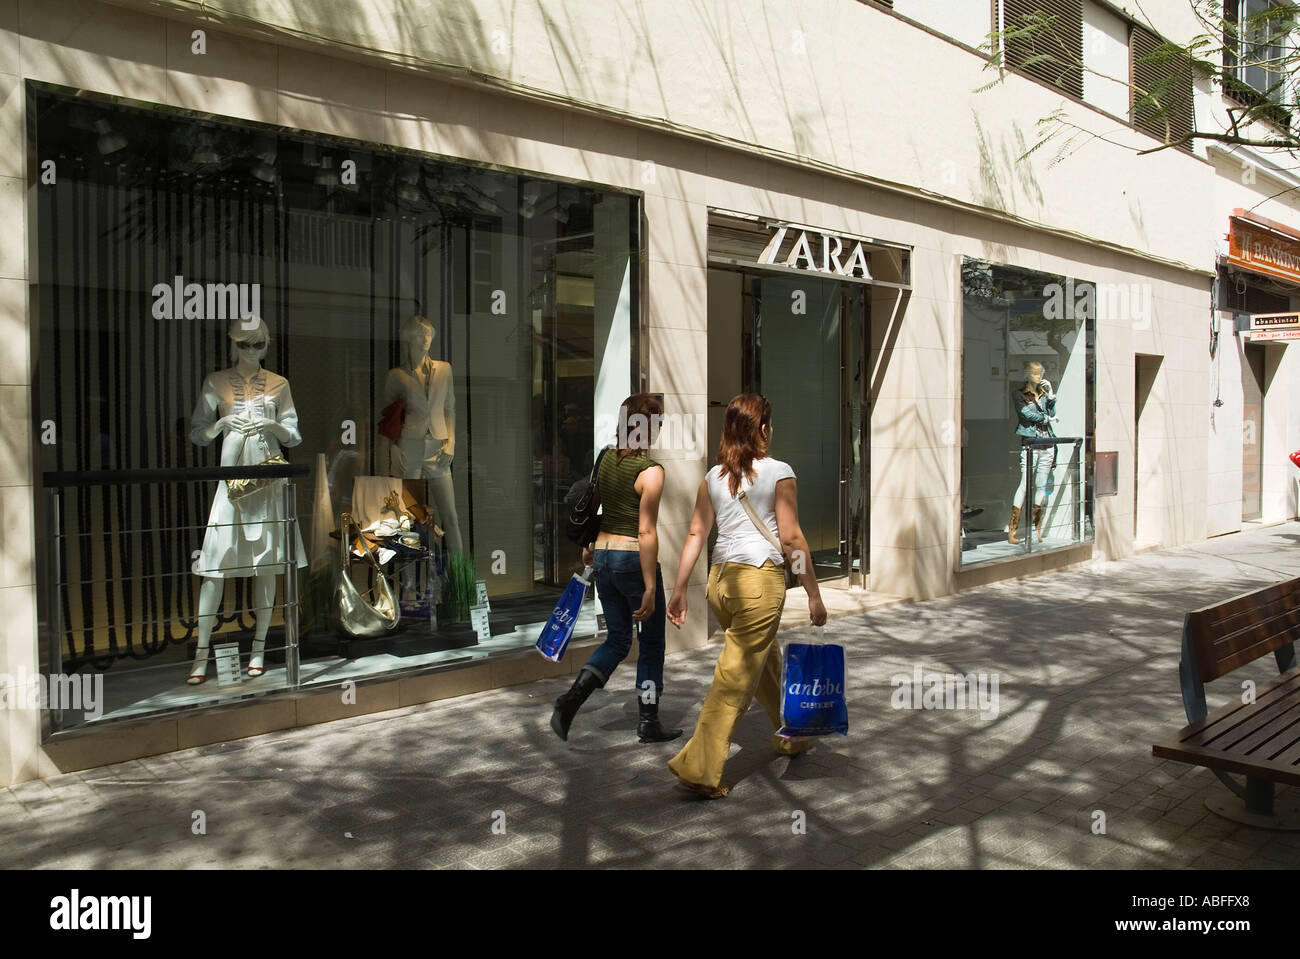 dh Calle de Leon Y Castillo ARRECIFE LANZAROTE zwei junge Damen mit  Einkaufen zu Fuß vorbei Zara Bekleidungsgeschäft Mode Mädchen spanien Stoff  Geschäft Frauen Stockfotografie - Alamy